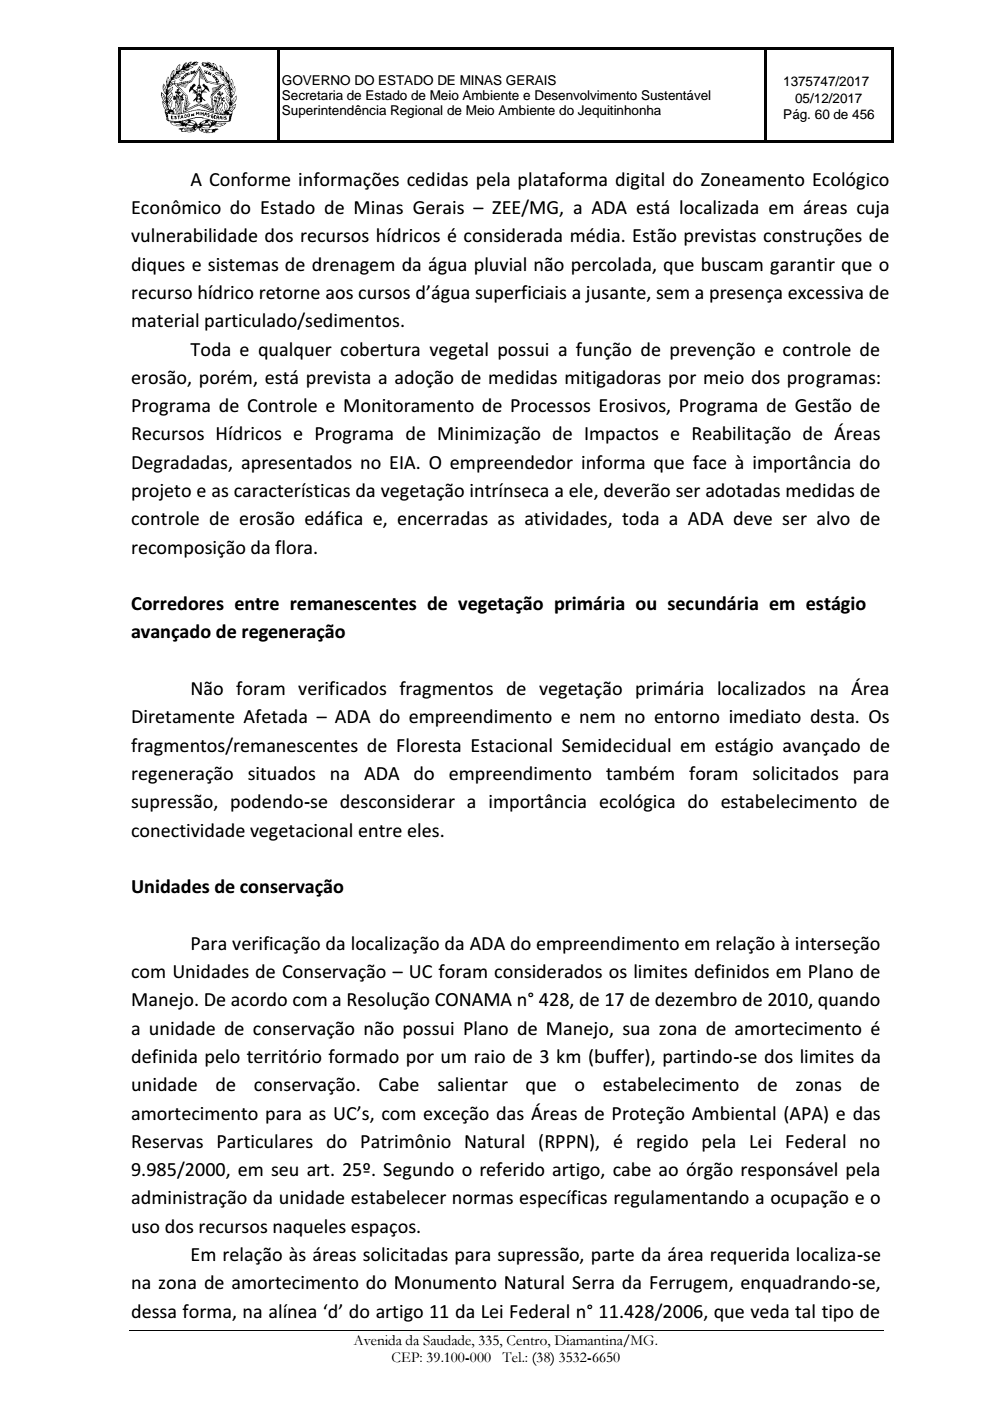 Page 60 from Parecer único da Secretaria de estado de Meio Ambiente e Desenvolvimento Sustentável (SEMAD)